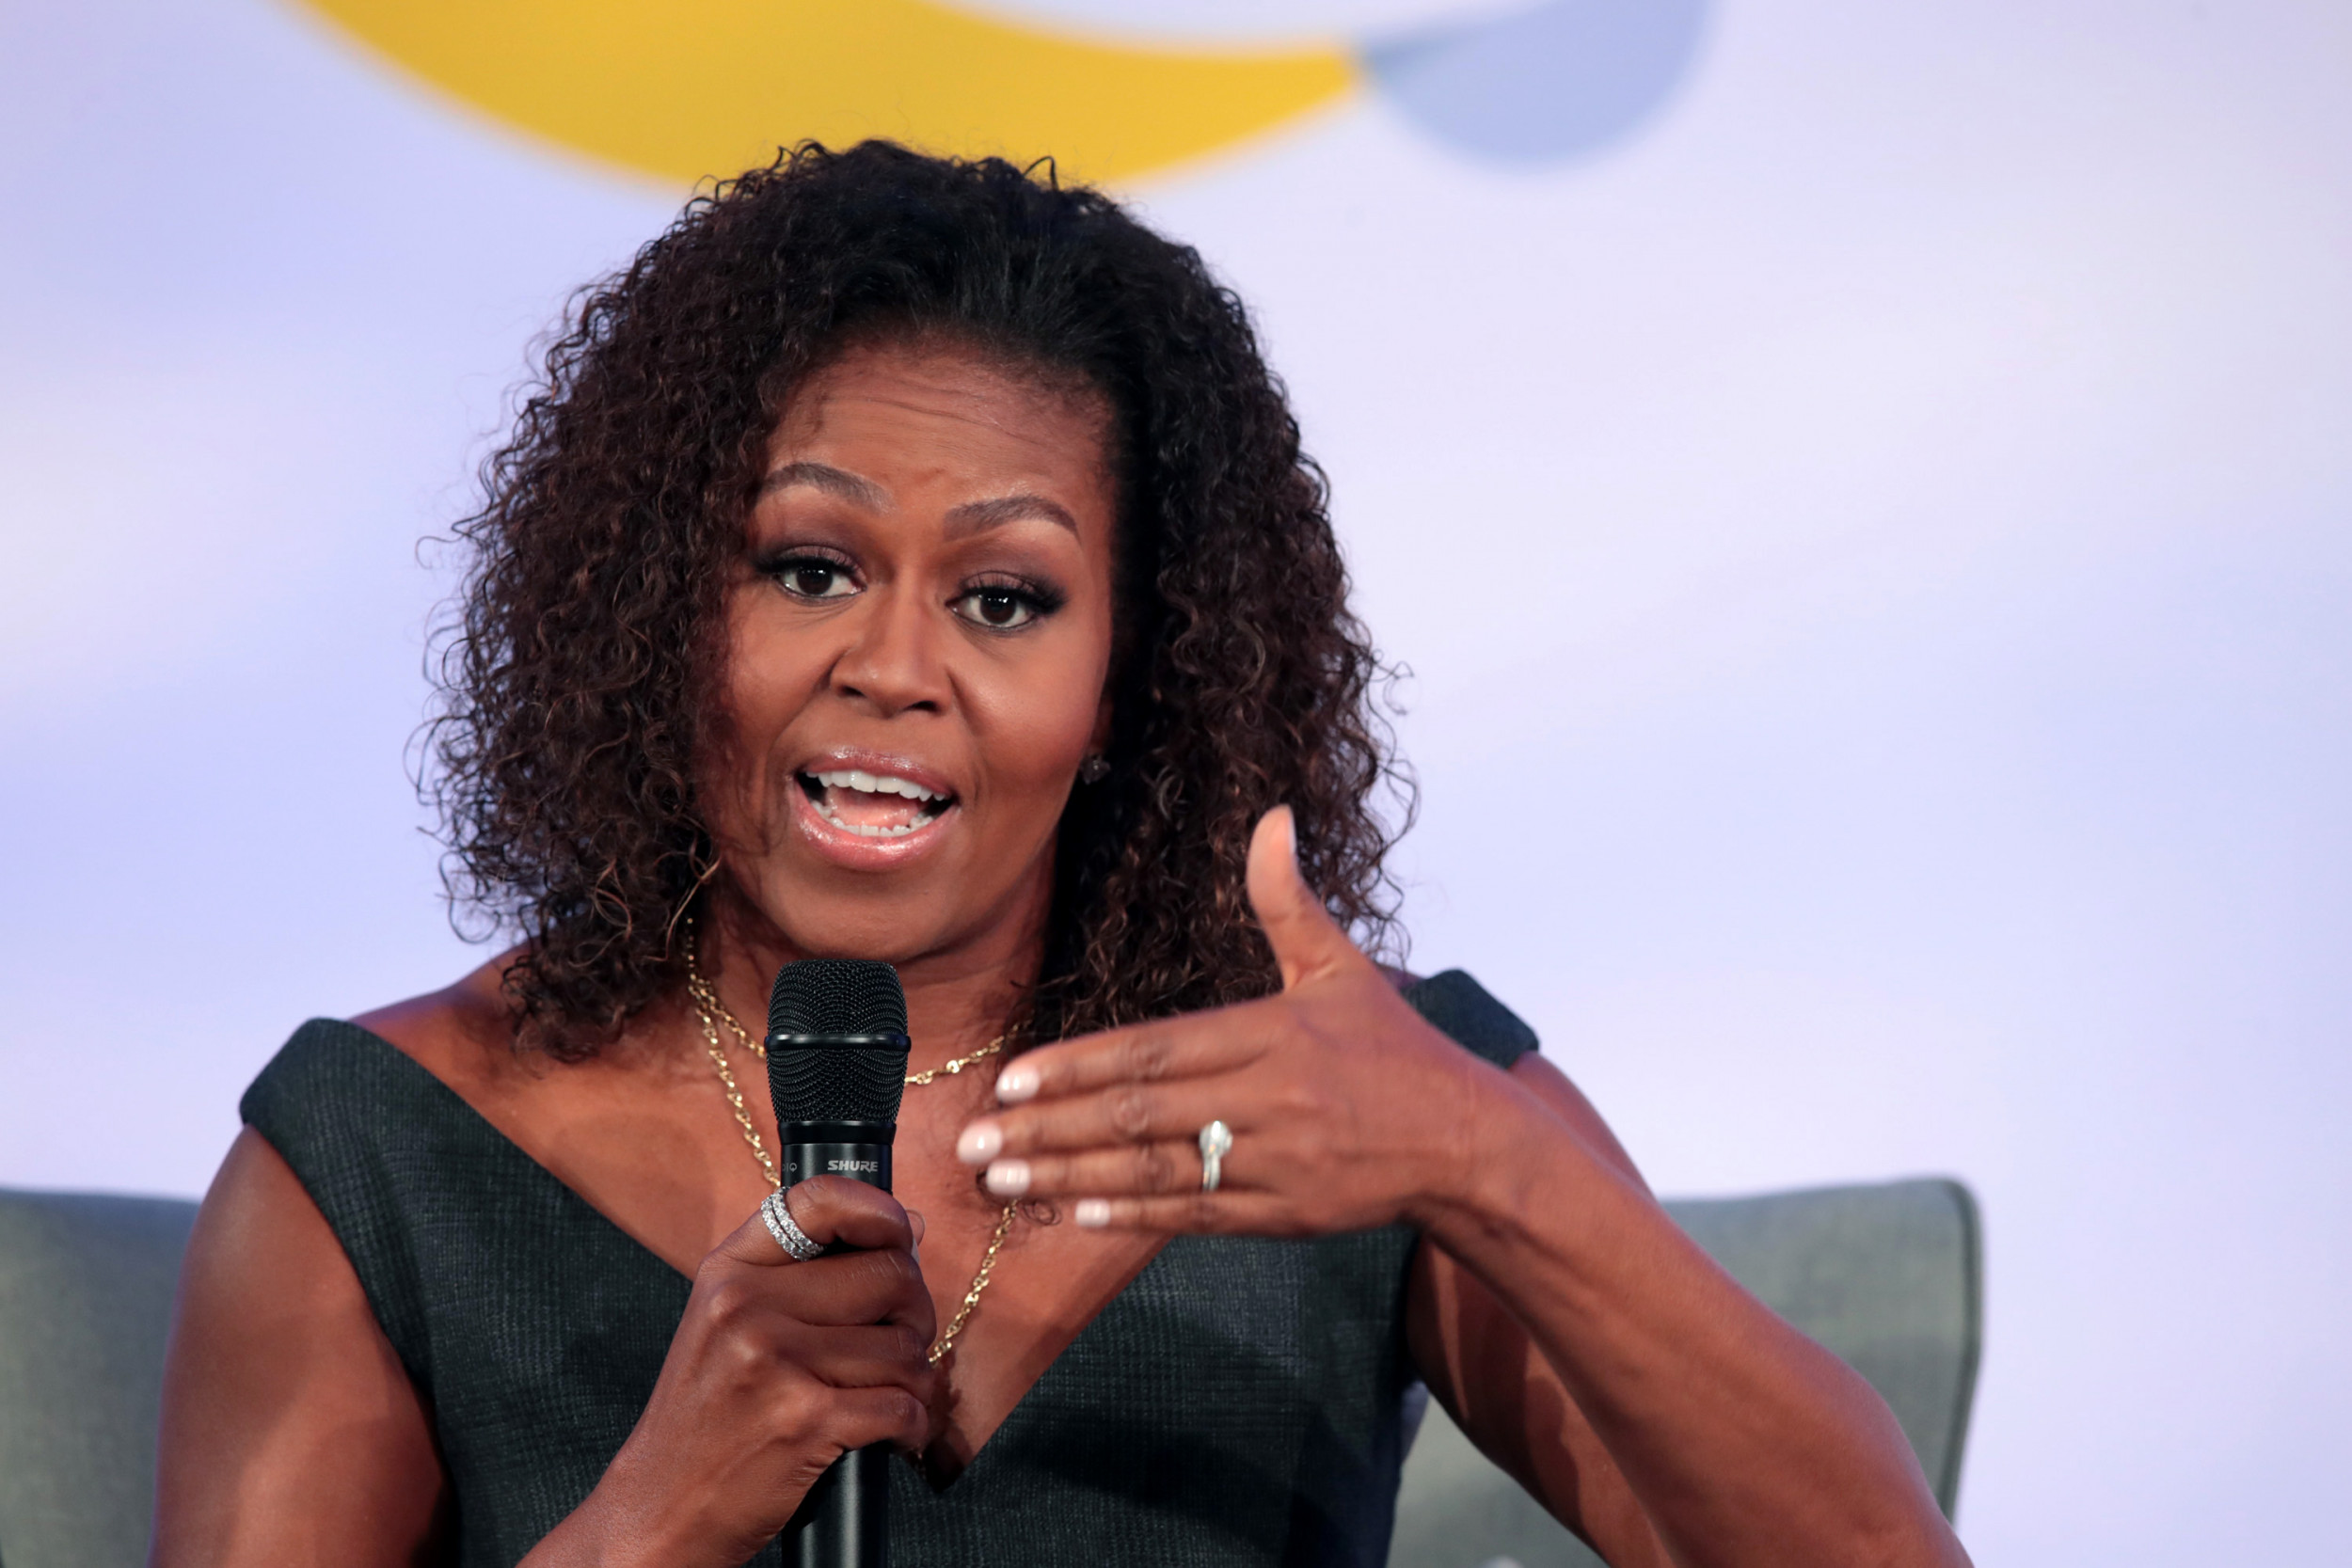 Video Resurfaces Of Michelle Obama Praising Wonderful Human Being Harvey Weinstein After Sex